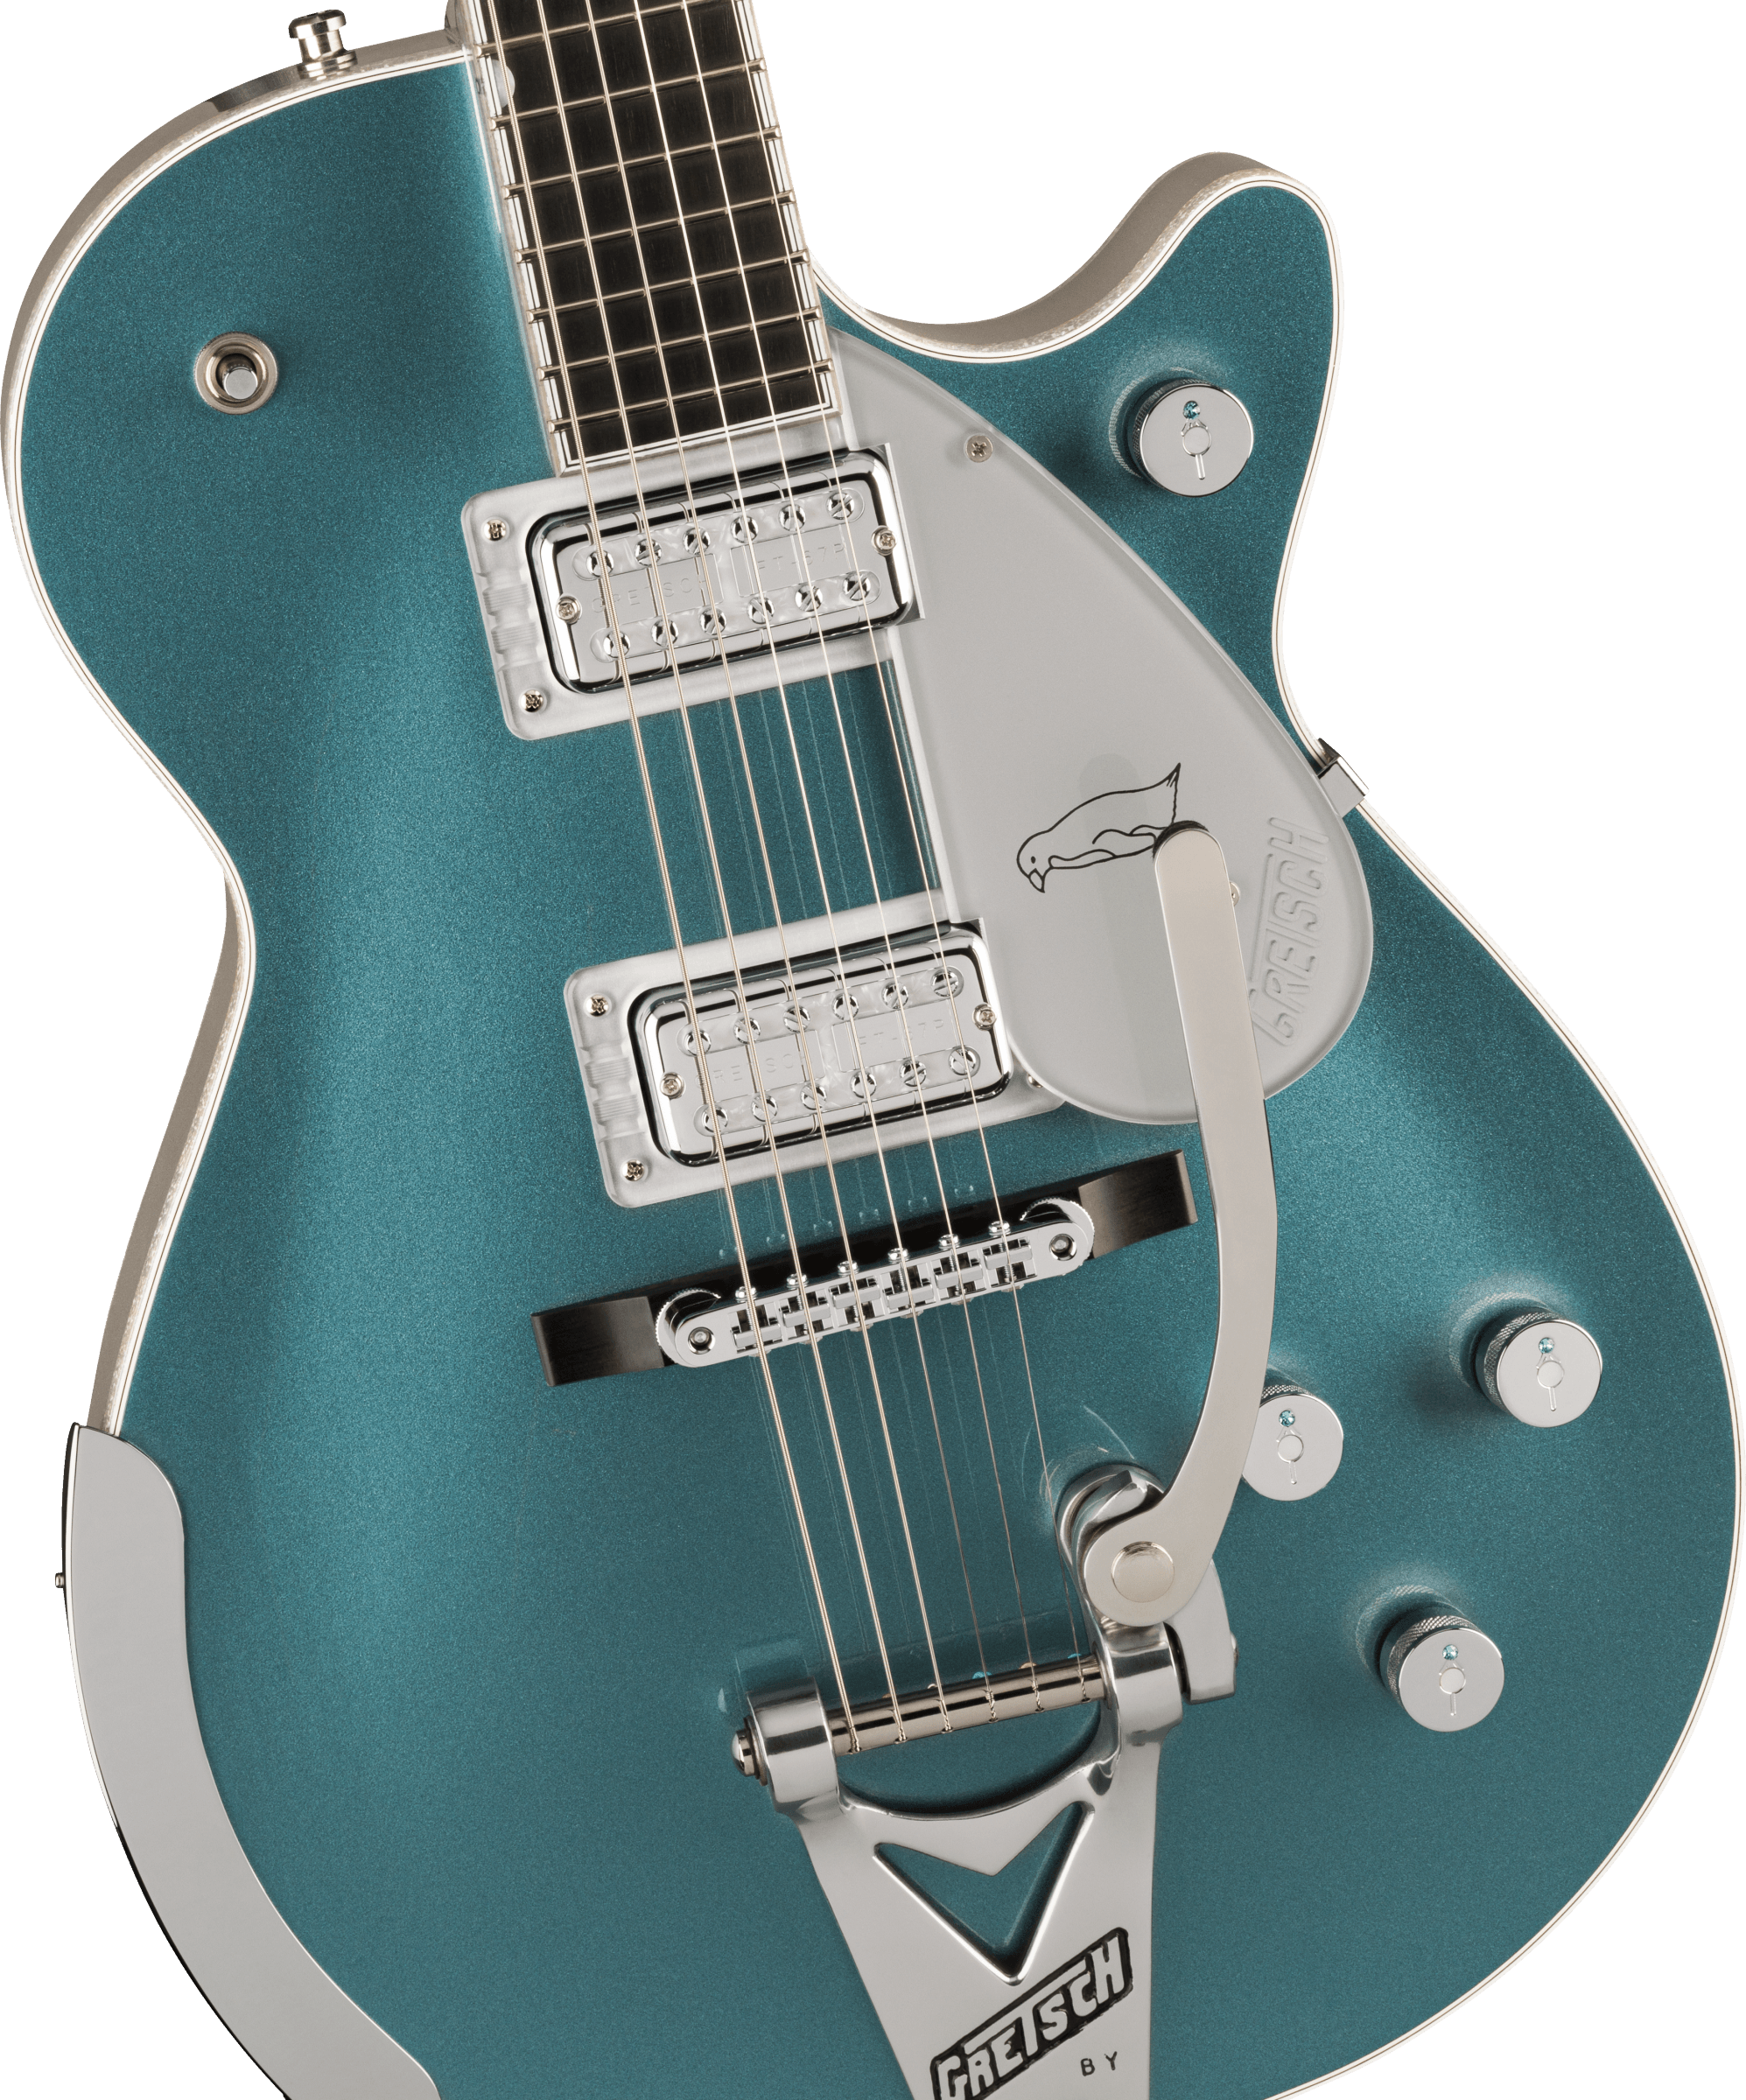 Gretsch G6134t-140 Ltd 140th Double-platinum Penguin Bigsby Pro Jap 2h Trem Eb - Two-tone Stone / Pure Platinum - Enkel gesneden elektrische gitaar - 